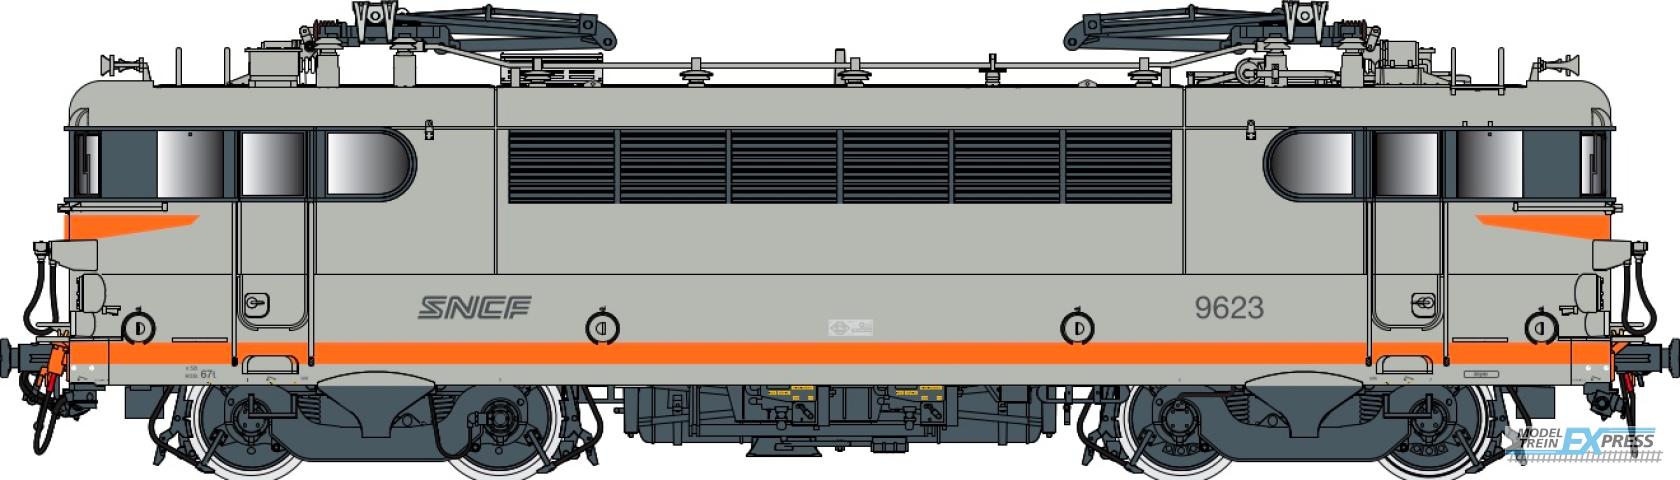 LS Models 10720S BB 9600, grijs/oranje, noedels logo  /  Ep. V  /  SNCF  /  HO  /  AC SOUND  /  1 P.